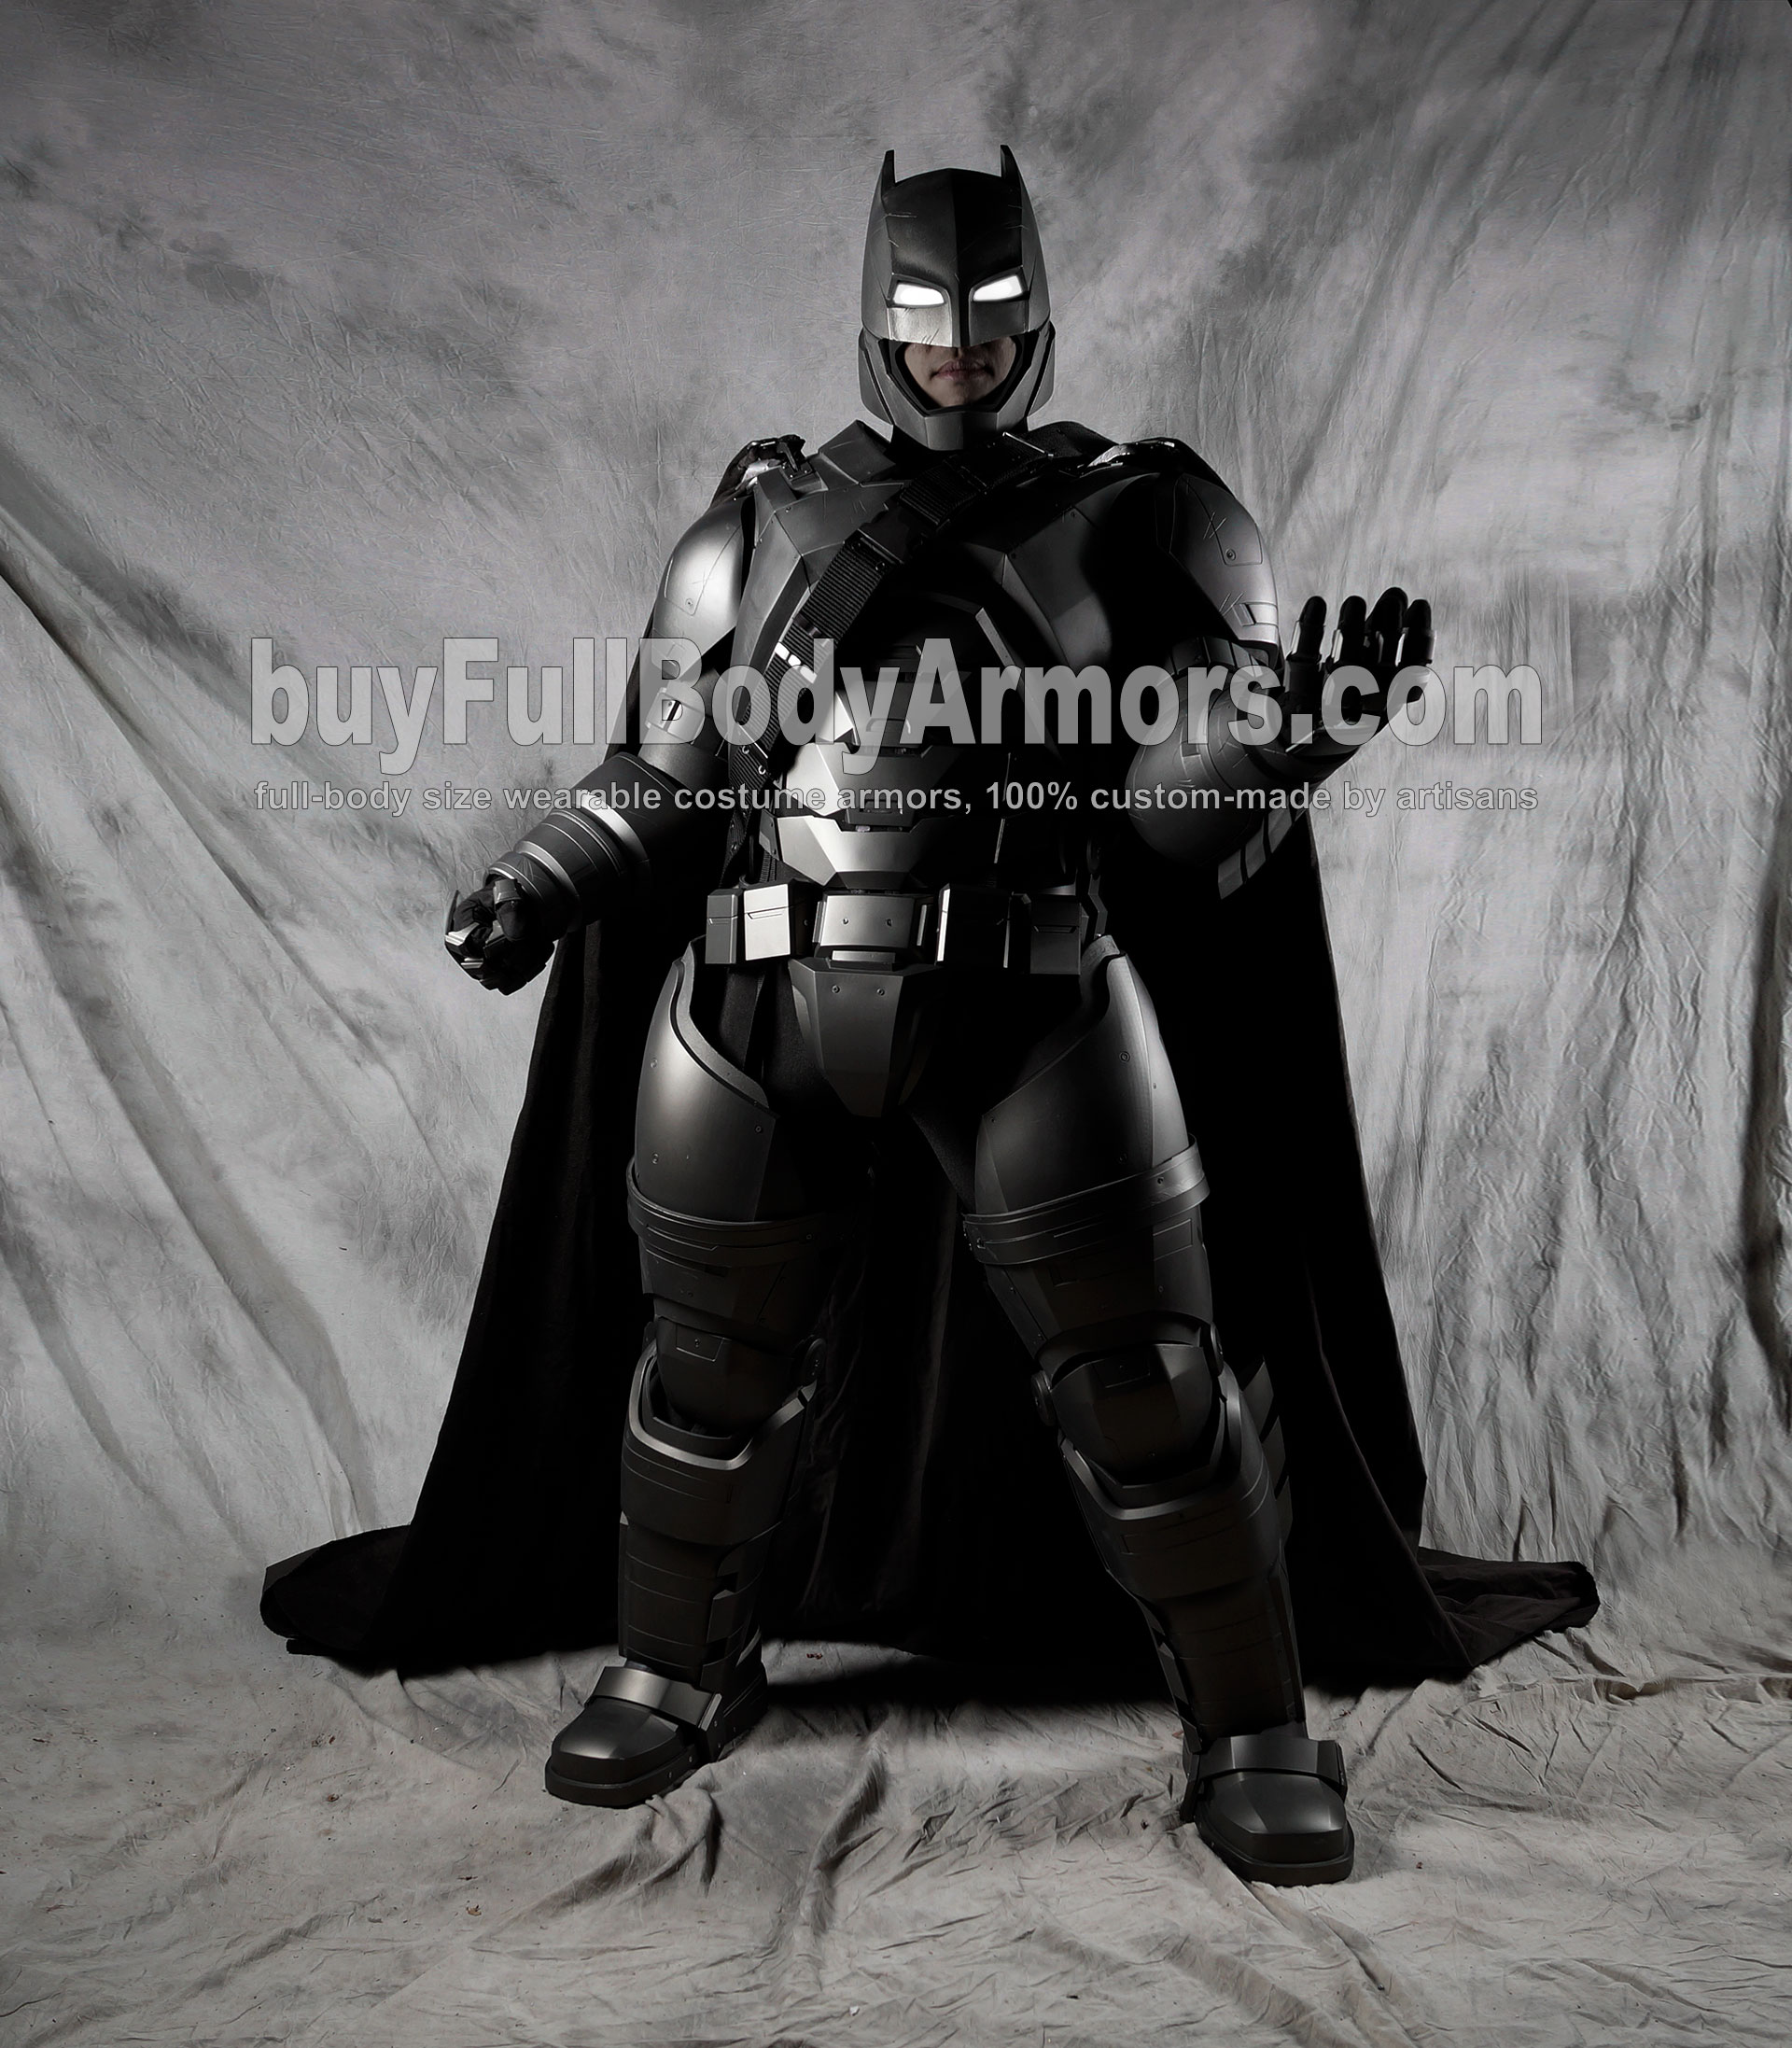 wearable armored batsuit batman suit armor power